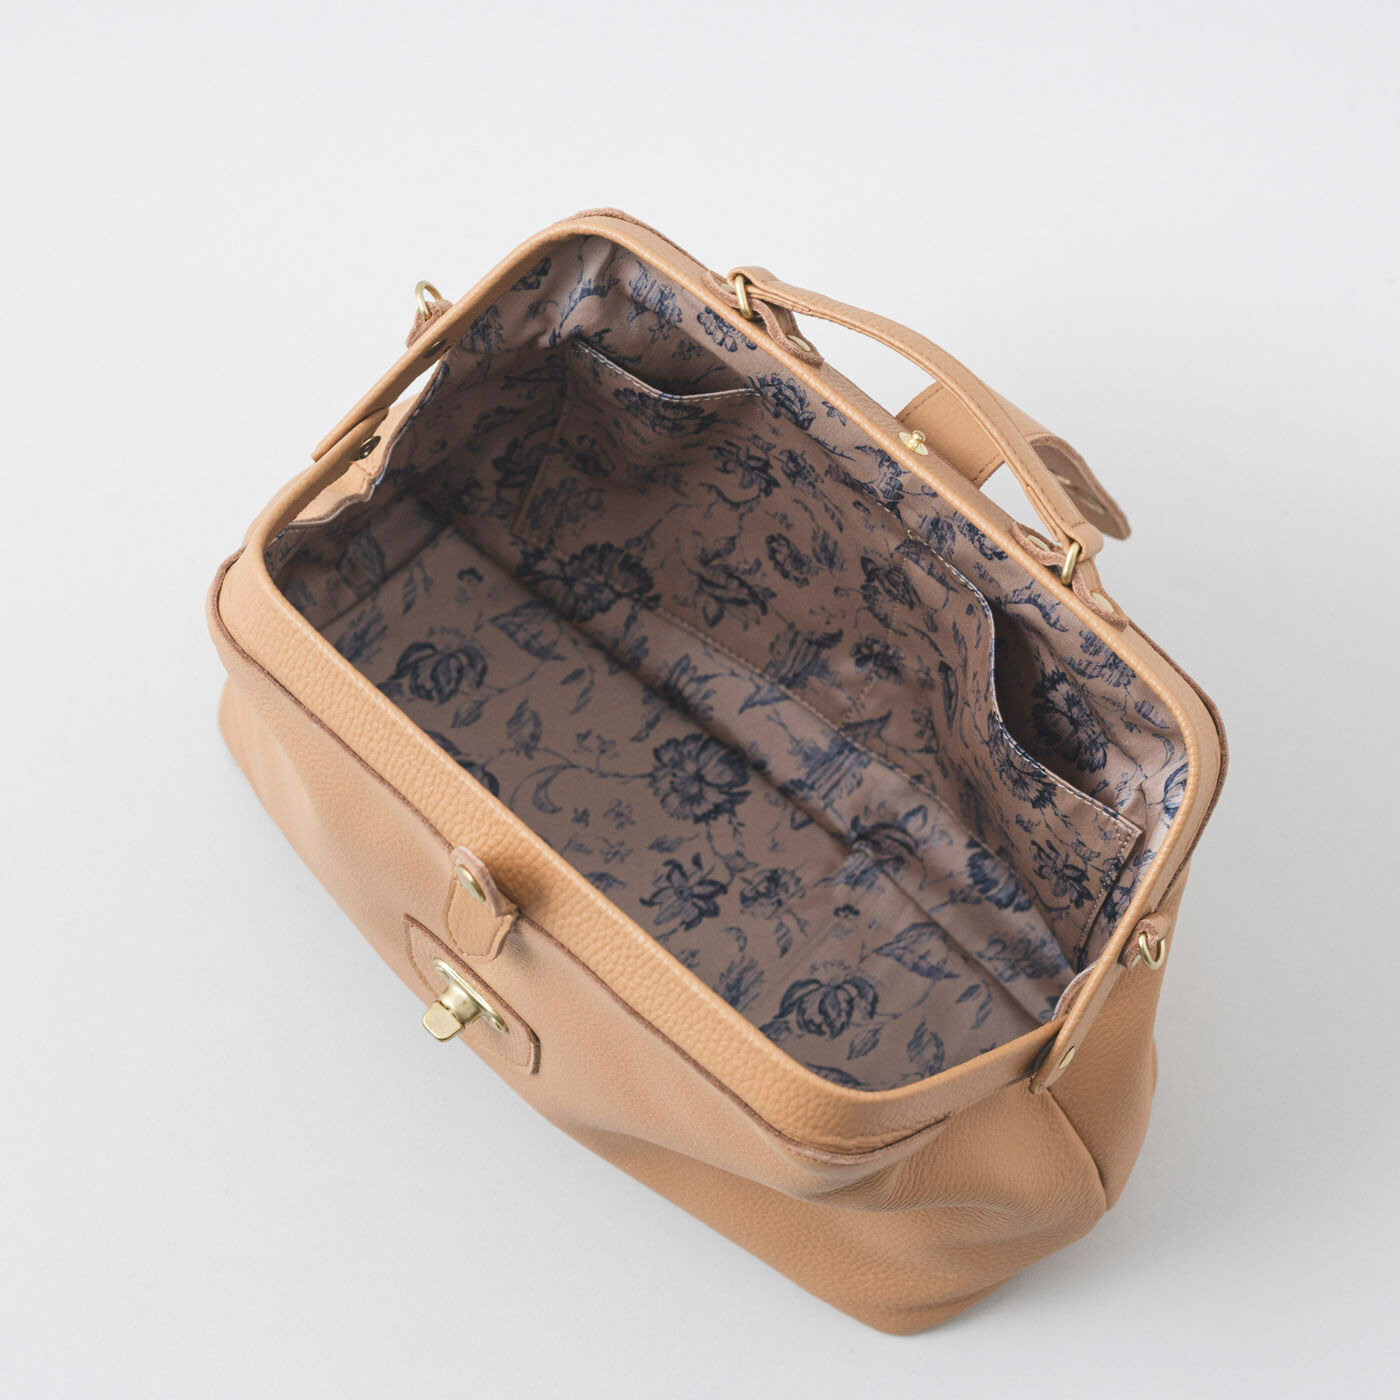 ＆Stories|プランナー山猫が作った 職人本革のミドルダレス〈ミルクティーベージュ〉|鞄の中には内ポケットが2個あります。